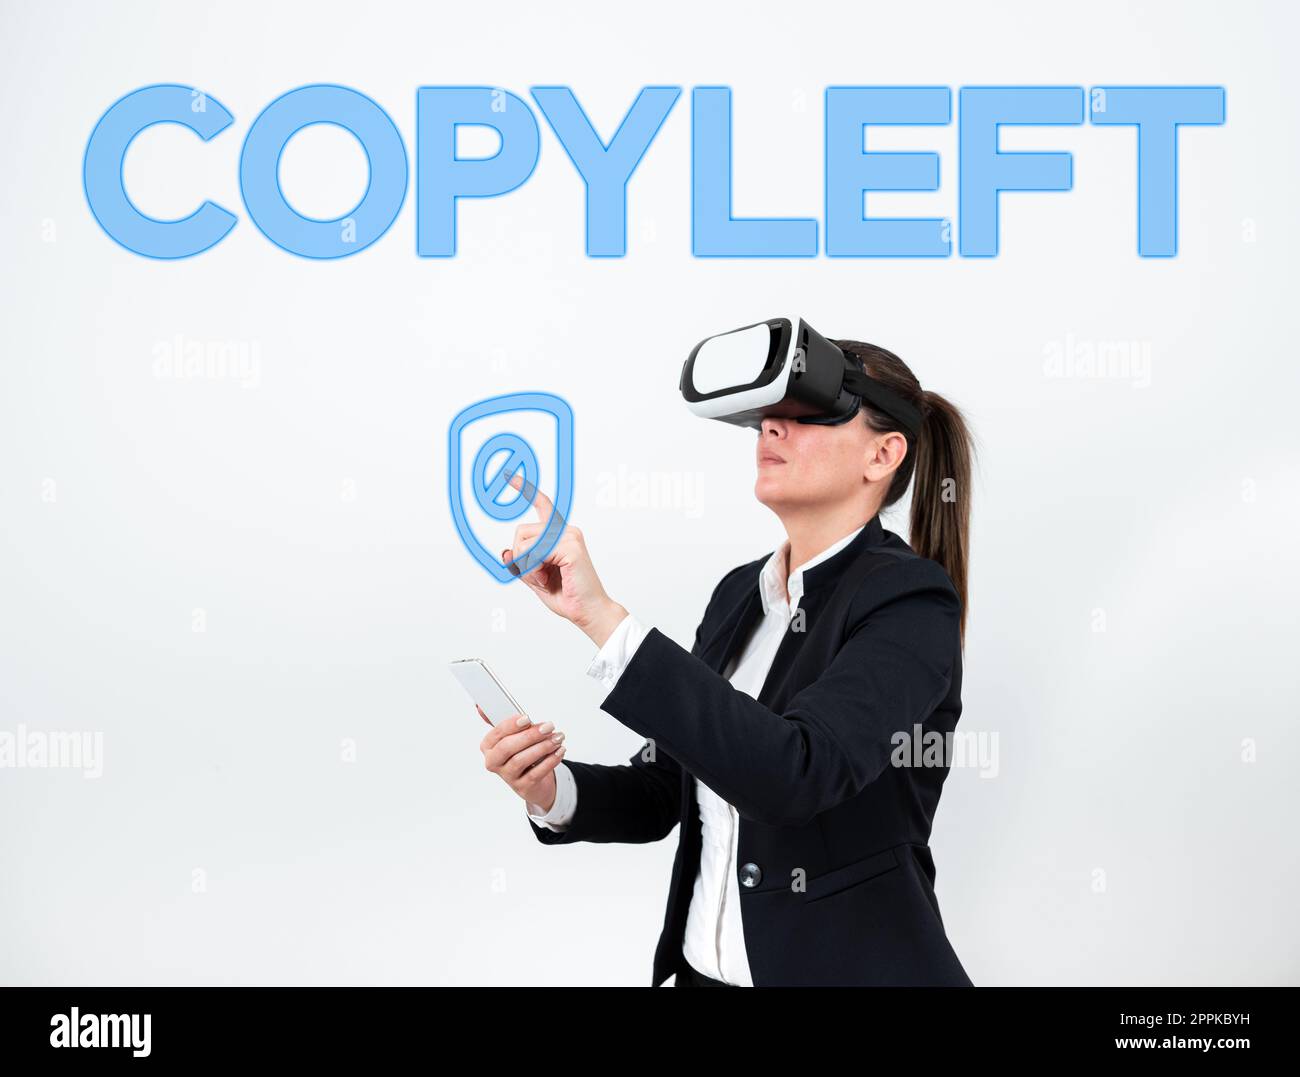 Das Schild zeigt Copyleft an. Begriff bedeutet das Recht, Software und Kunstwerke frei zu nutzen, zu modifizieren, zu kopieren und gemeinsam zu nutzen Stockfoto